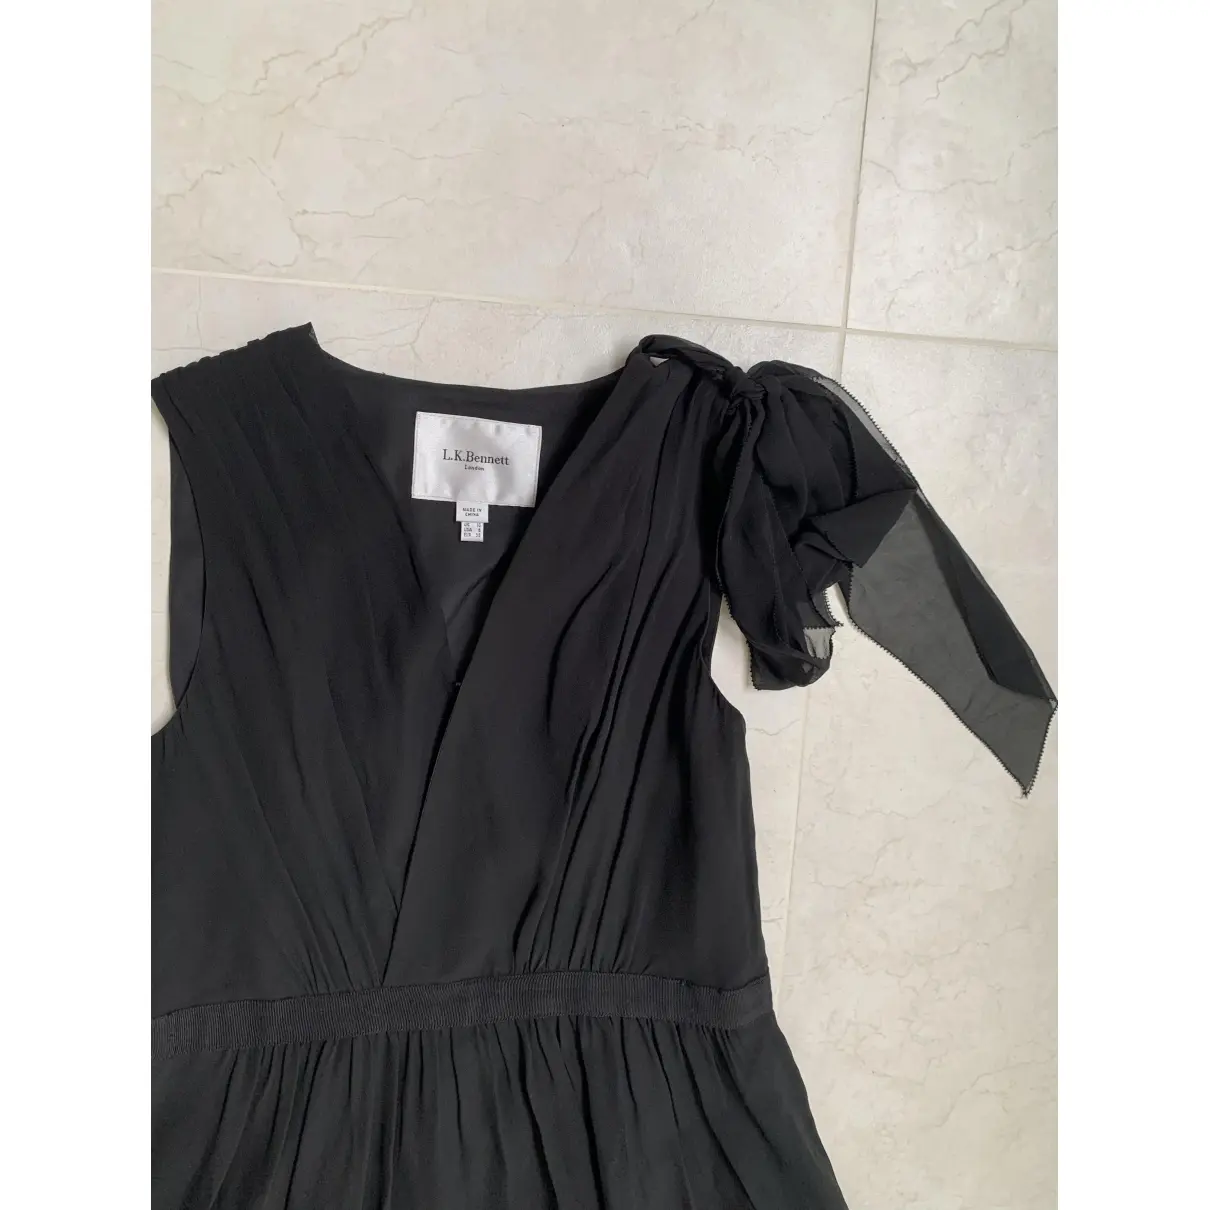 Buy Lk Bennett Silk mid-length dress online